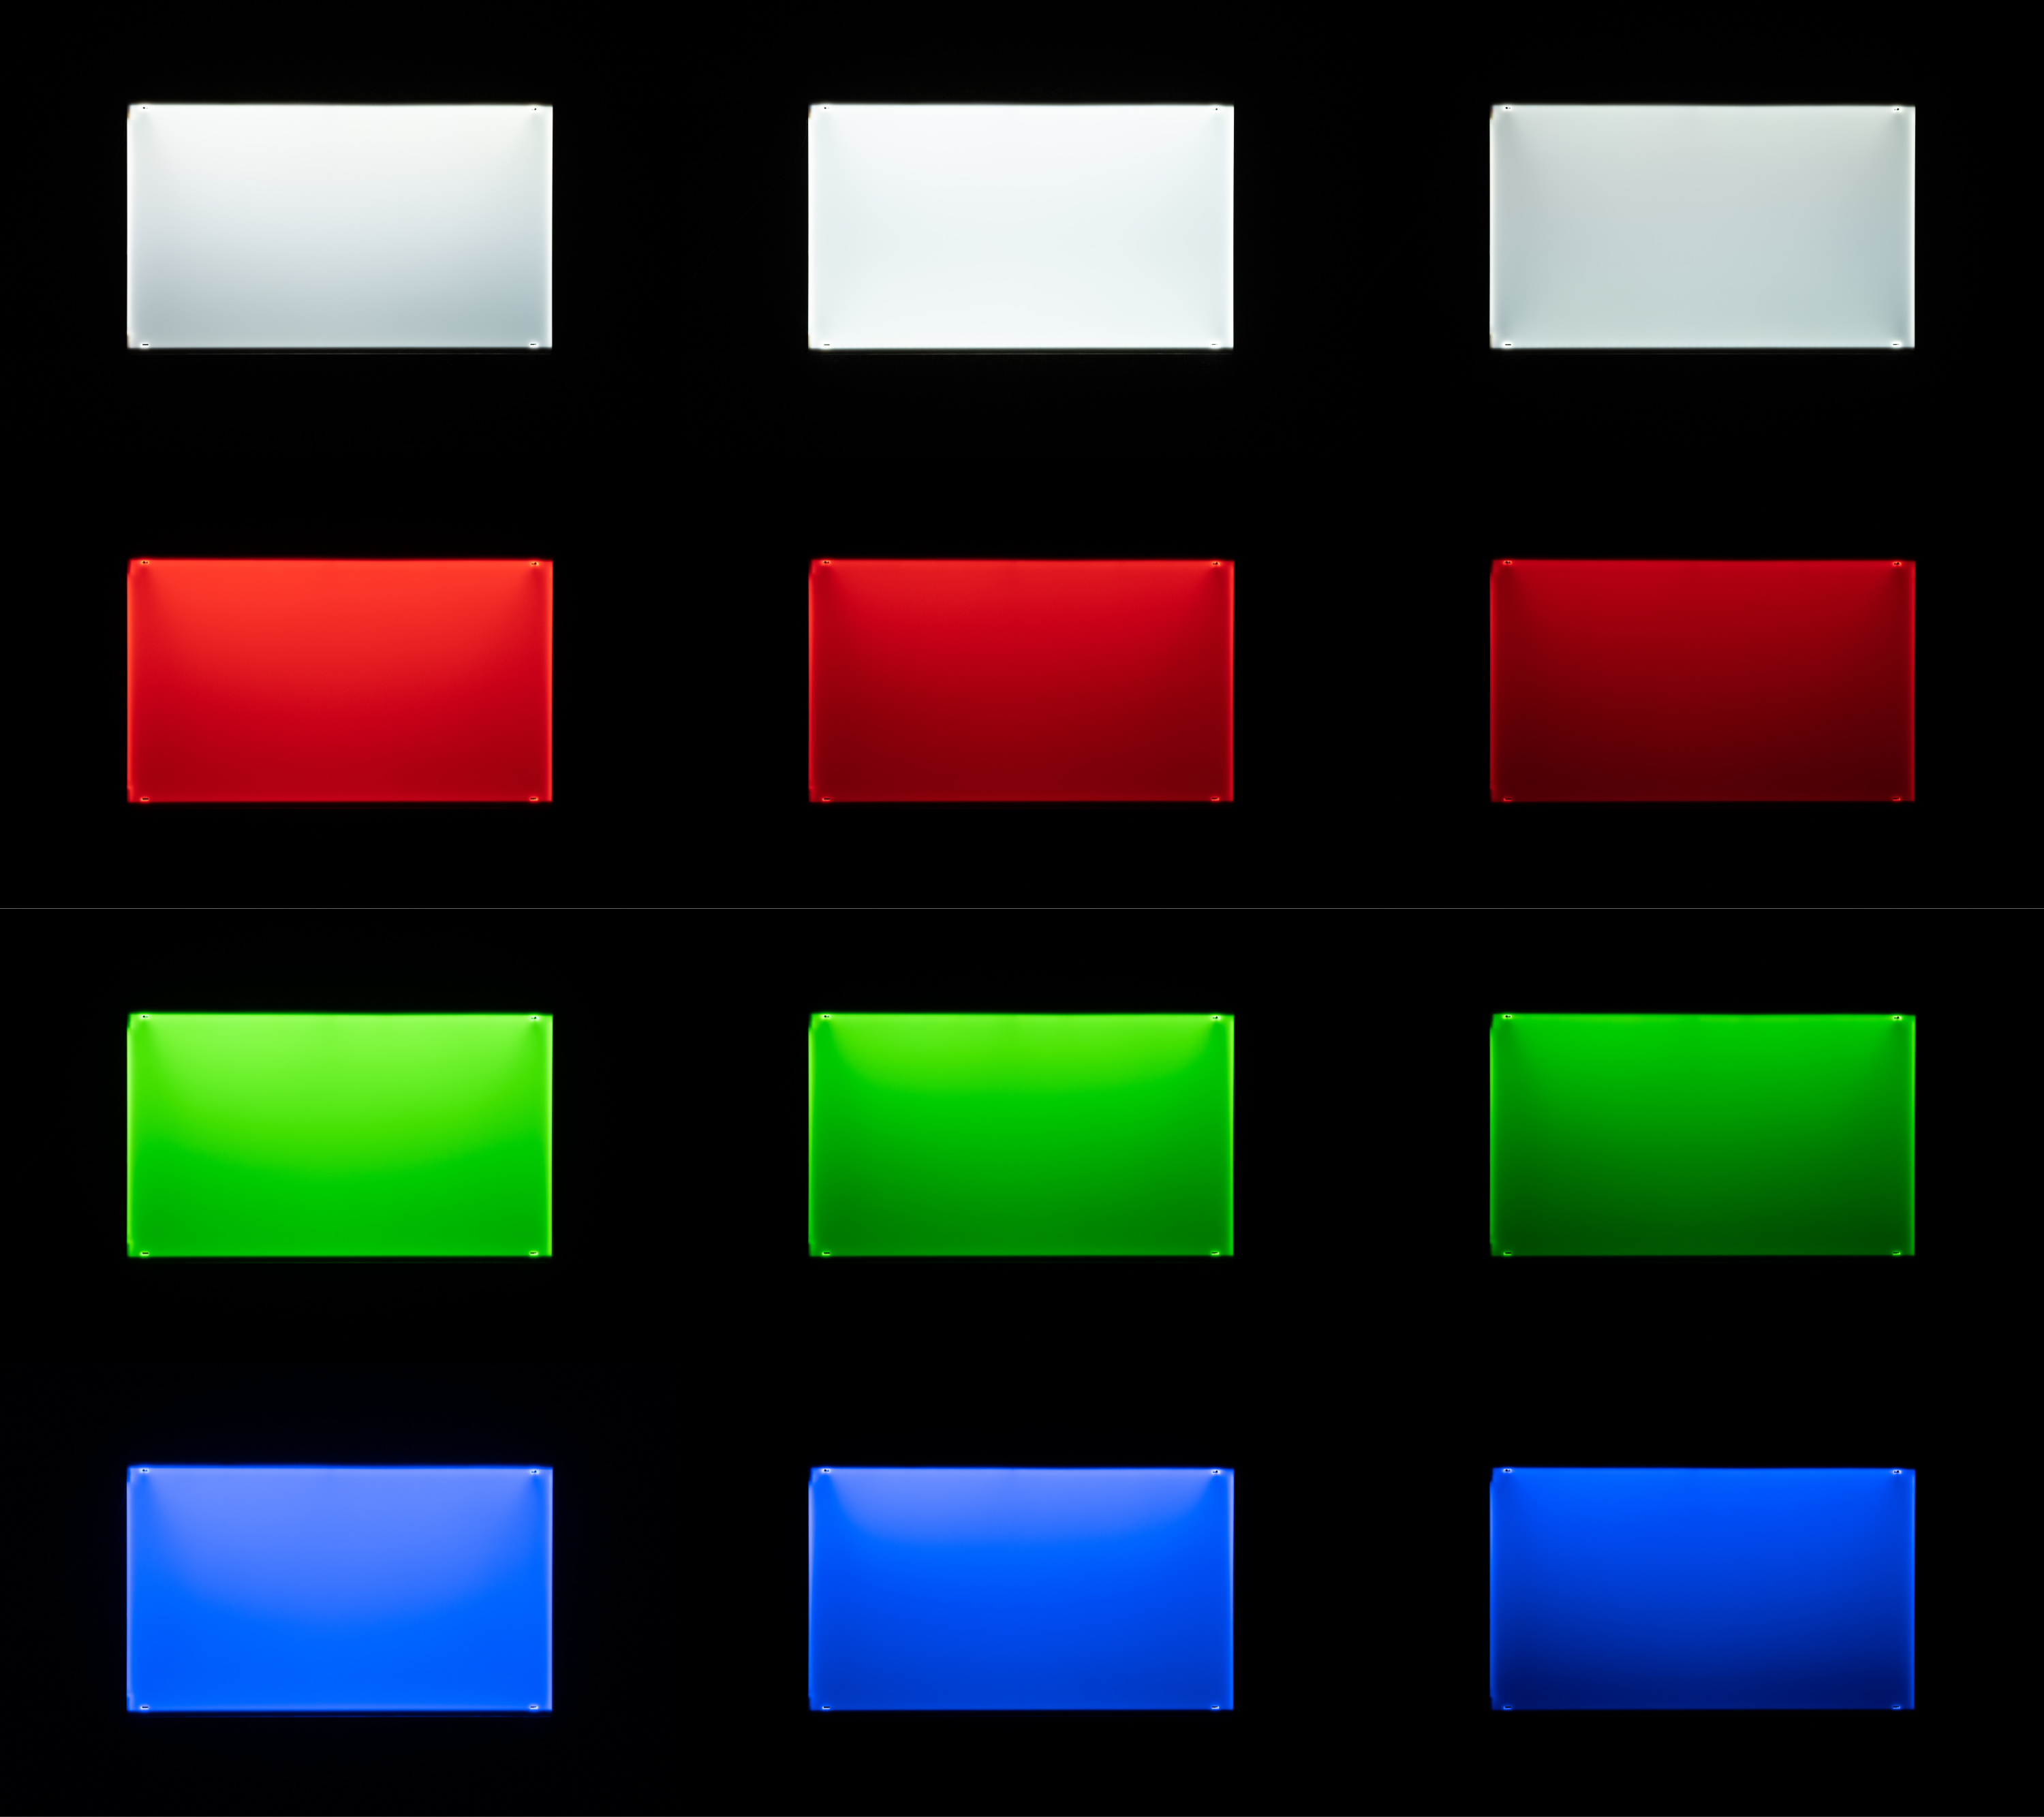 ライトスクリーン (RGB+W)